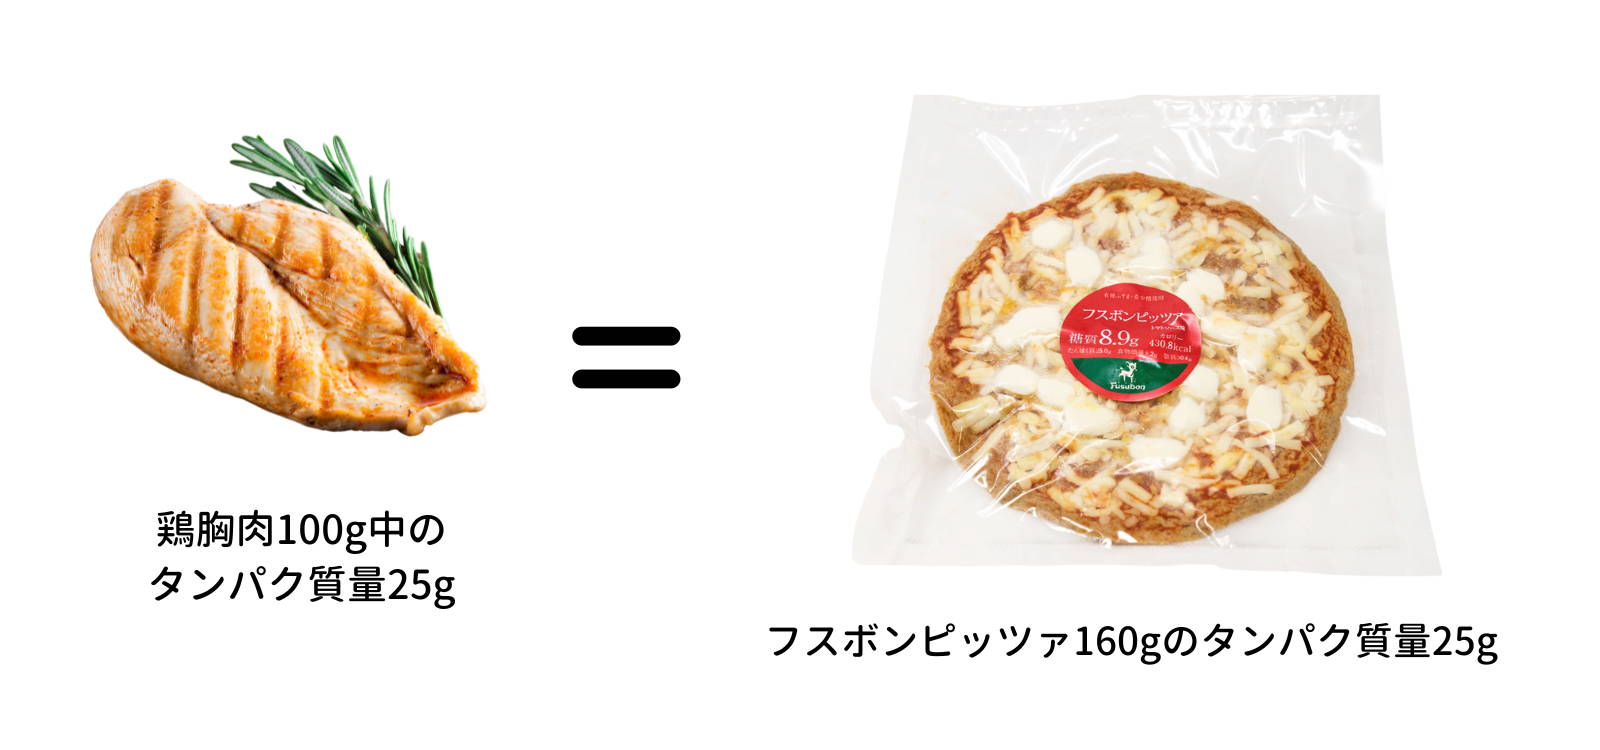 フスボンピザに含まれるタンパク質量を鶏胸肉と比較